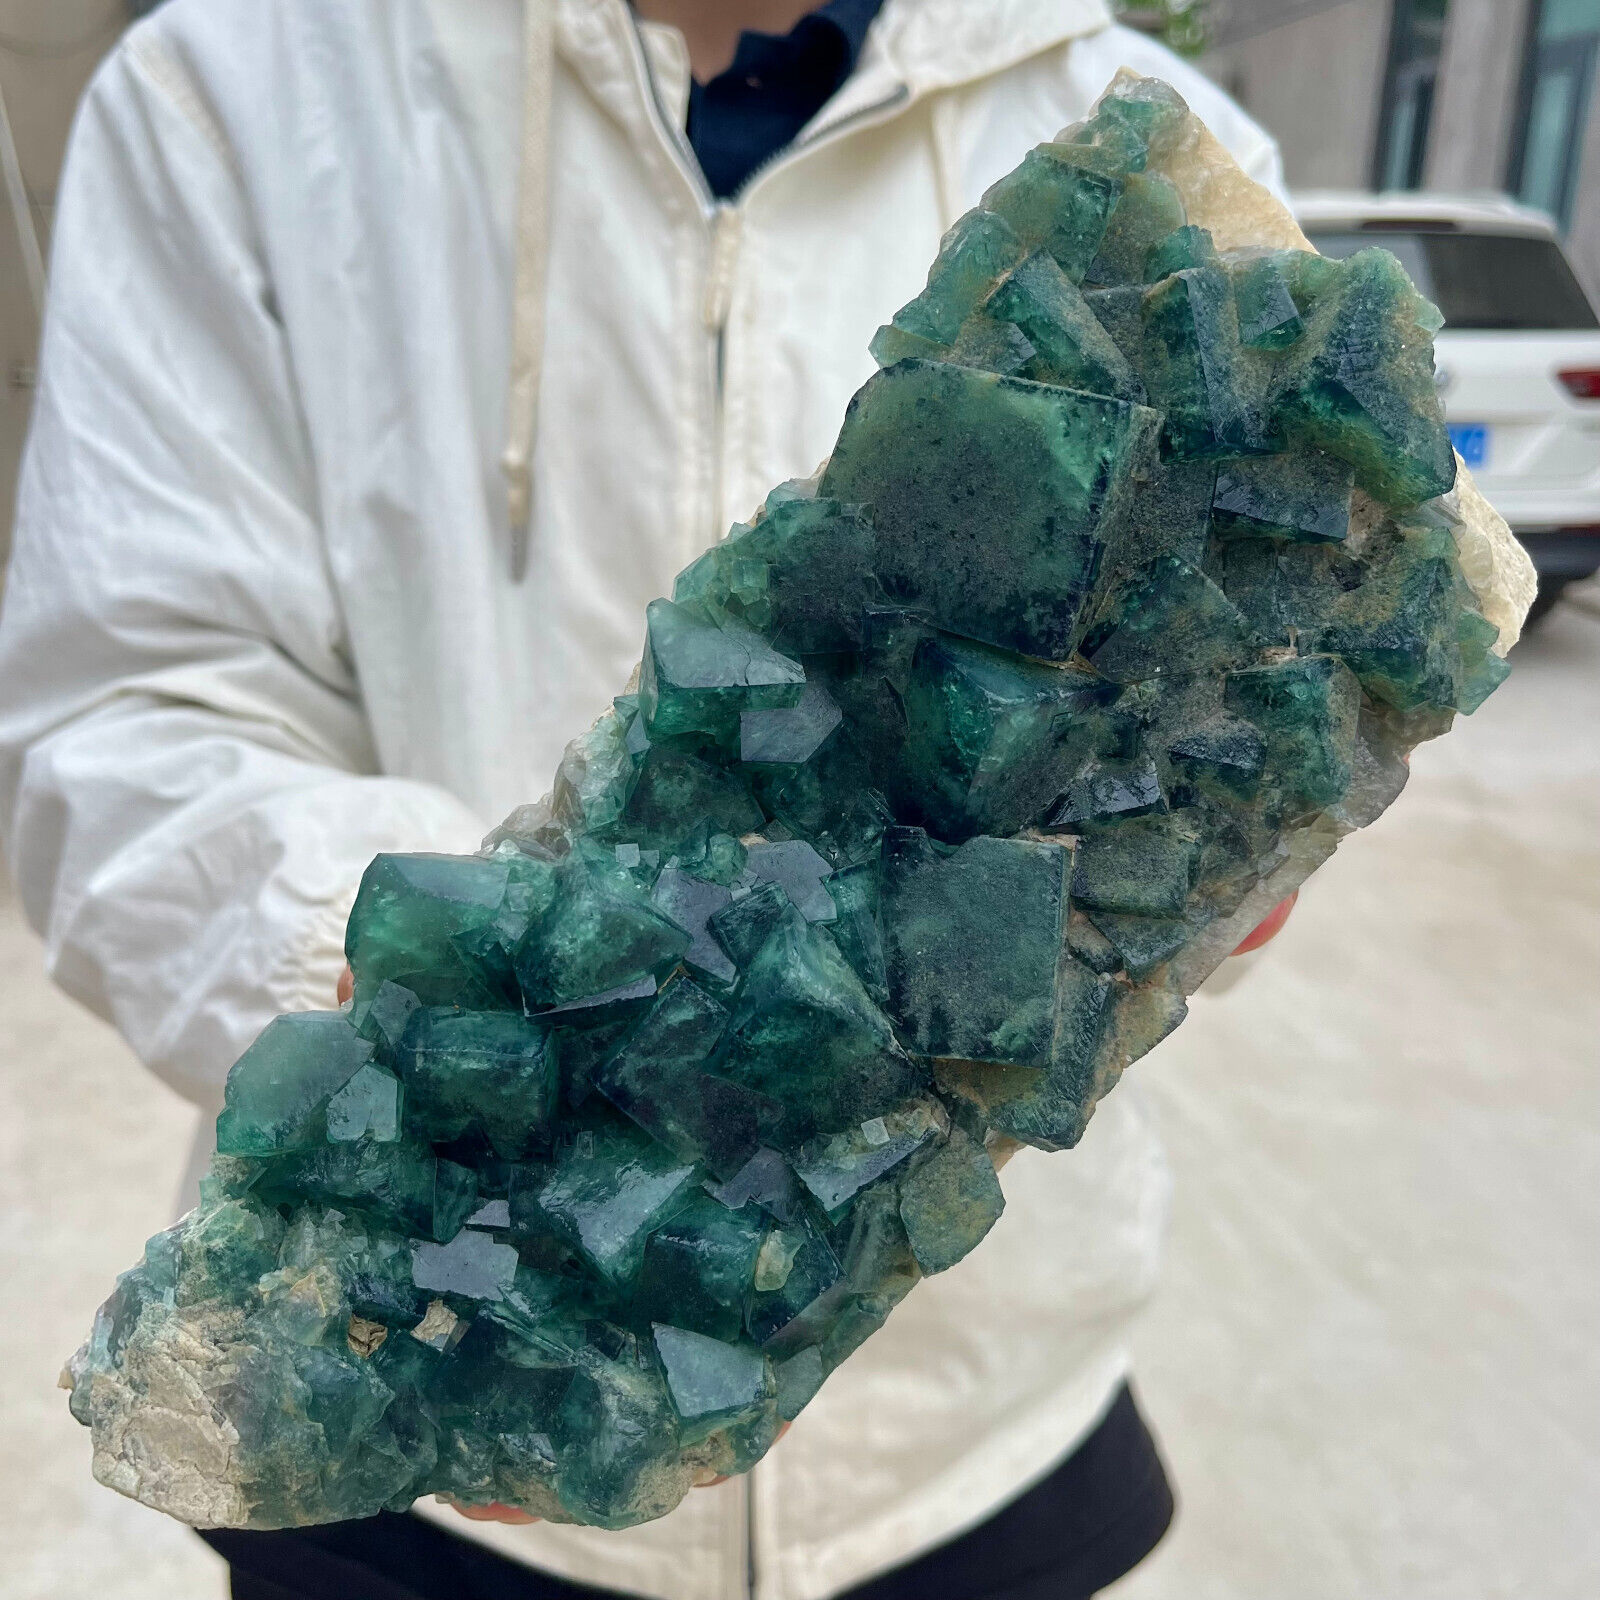 6lb Large NATURAL Green Cube FLUORITE Quartz Crystal Cluster Mineral Specimen